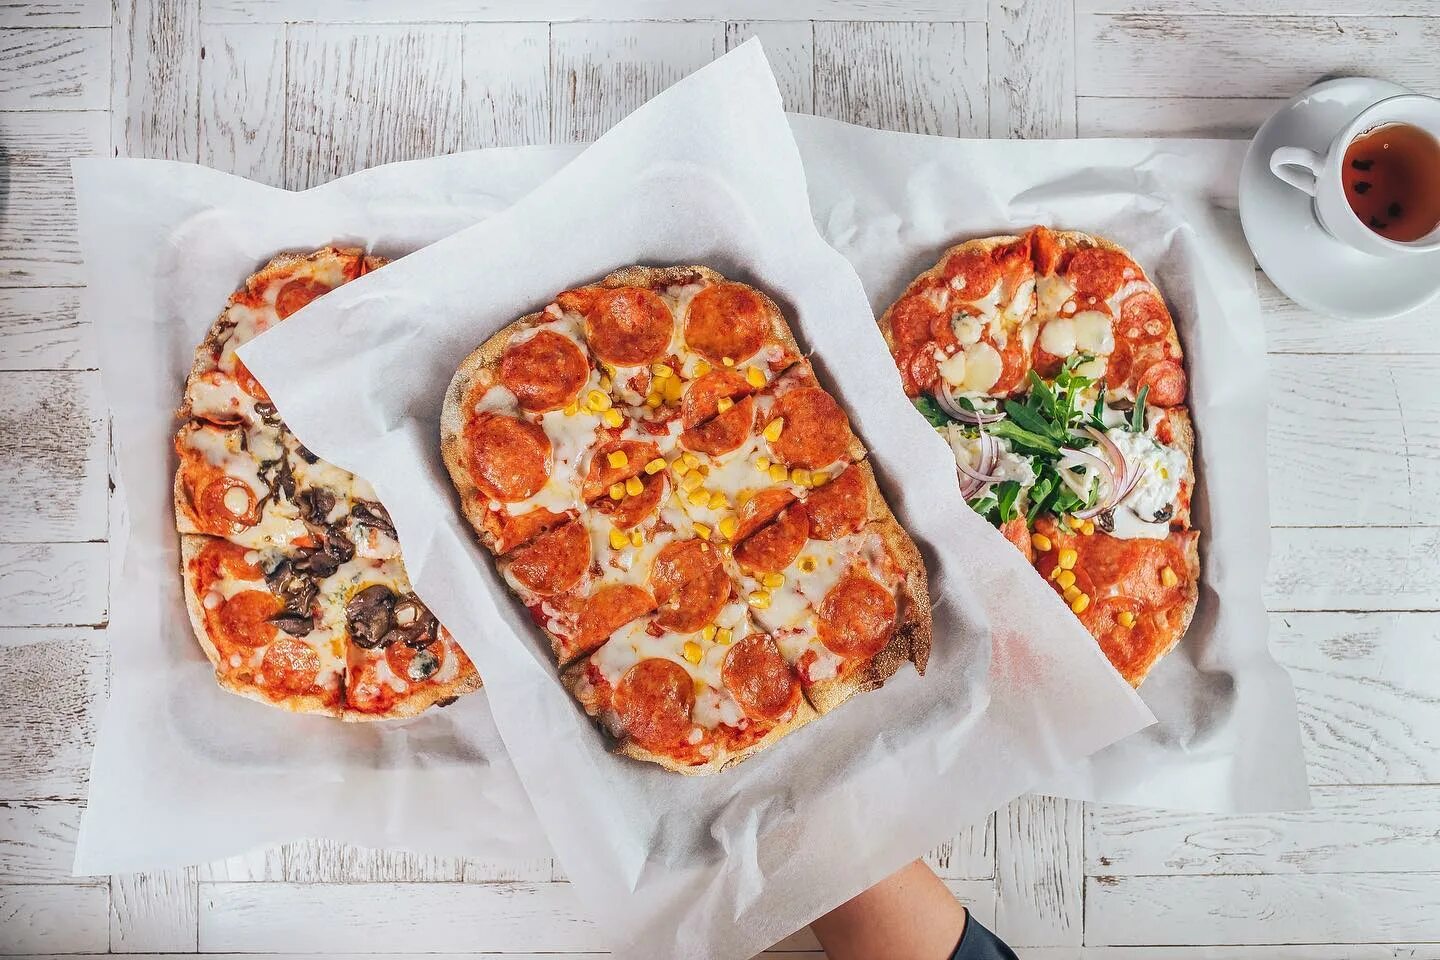 Бесплатная доставка пиццы спб. Кафе pizza si. Пицца панорама. Горячие обеды пицца.